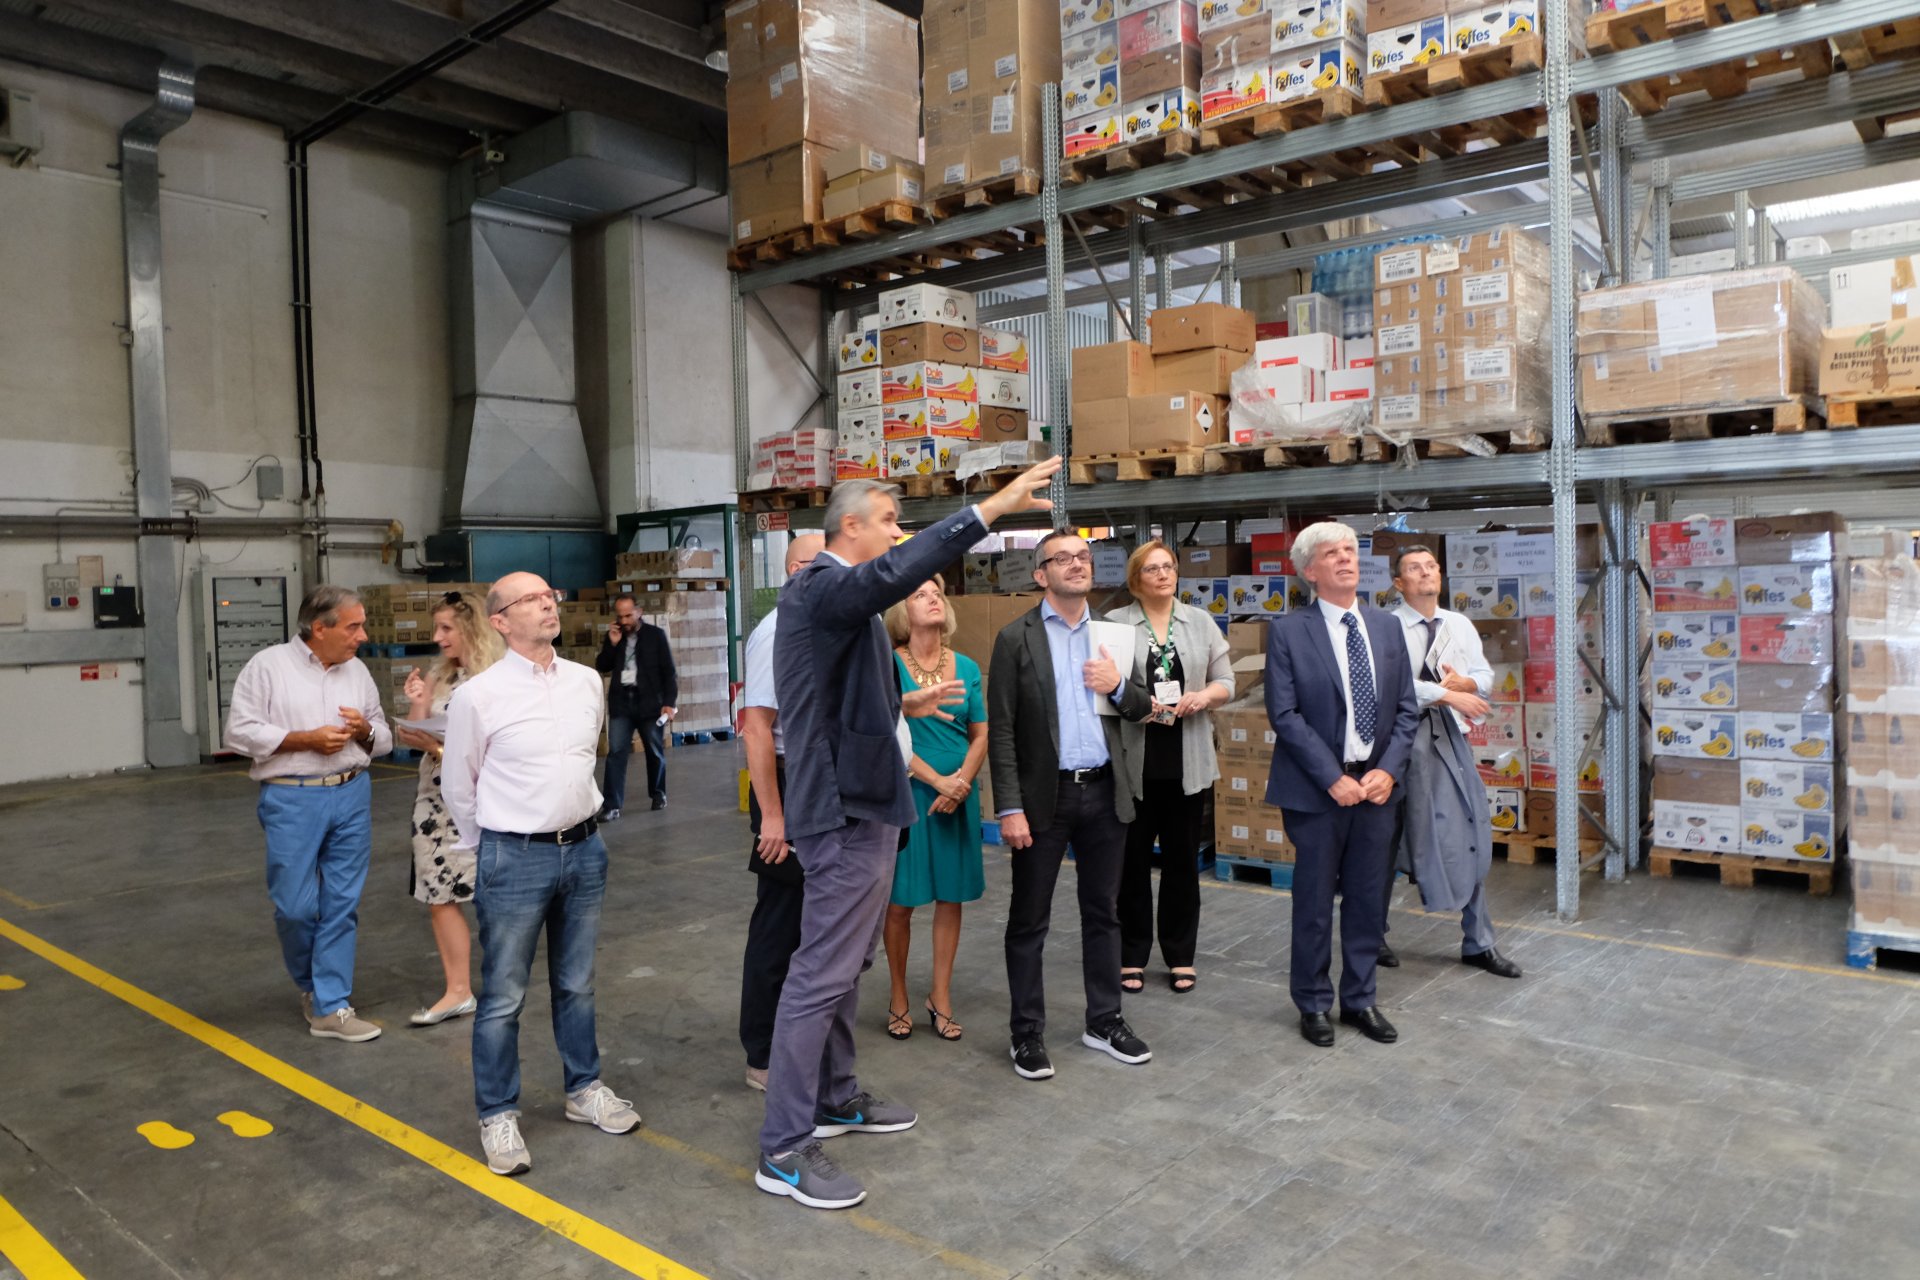 Le foto della visita dell'assessore regionale Stefano Bolognini al Banco alimentare